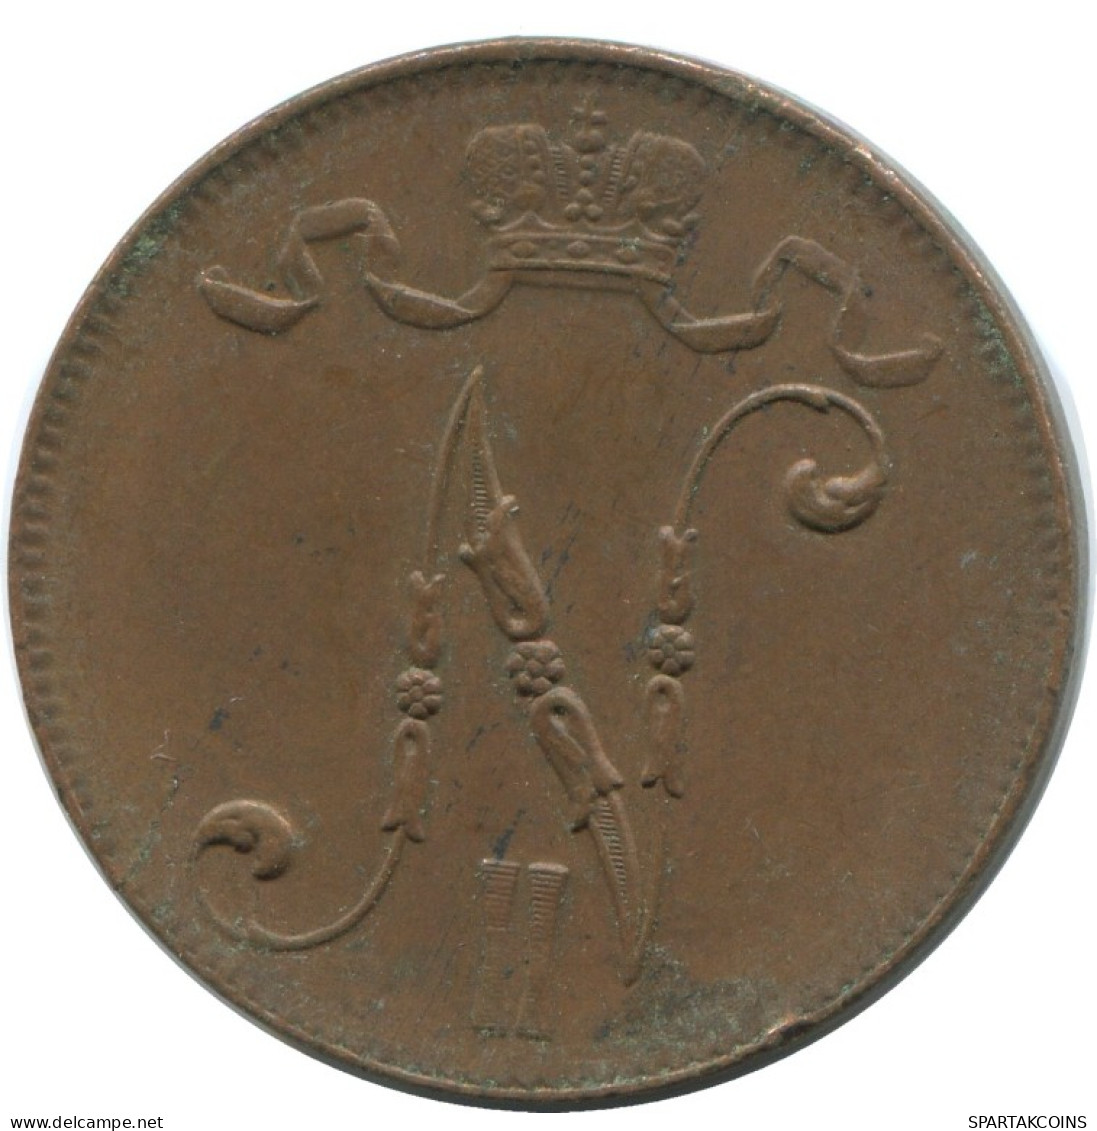 5 PENNIA 1916 FINLANDIA FINLAND Moneda RUSIA RUSSIA EMPIRE #AB142.5.E.A - Finlandia